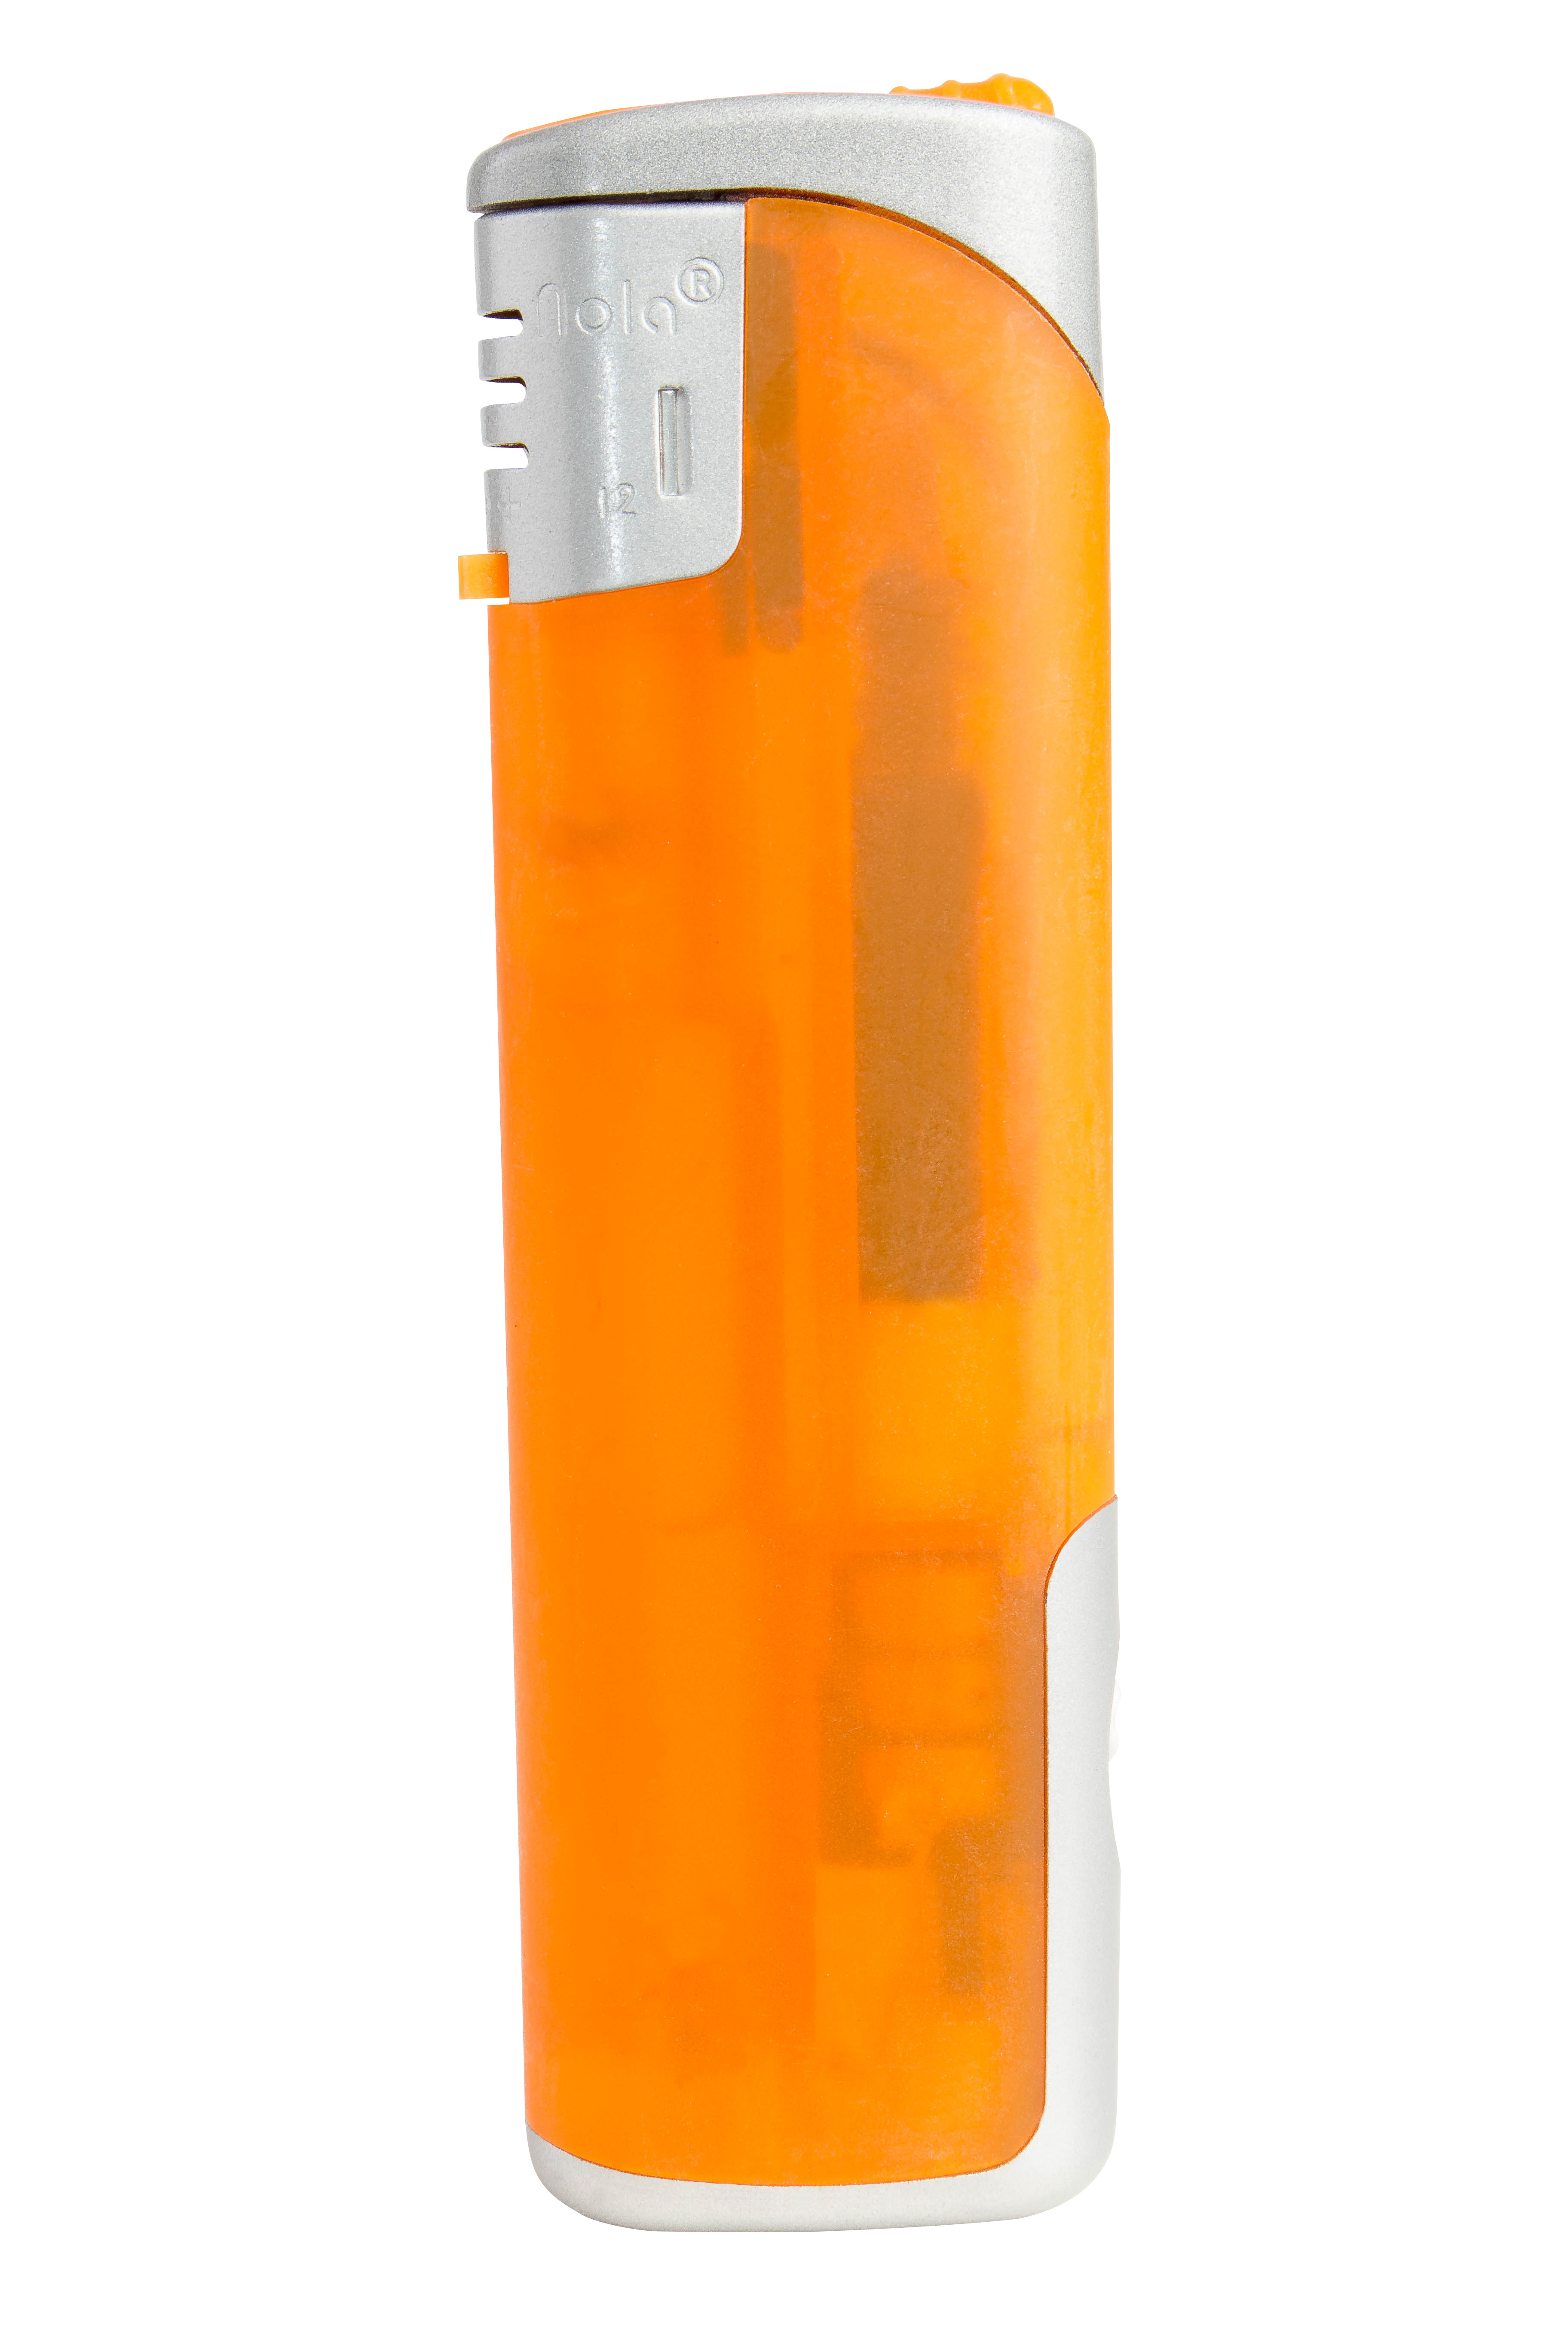 Nola 12 Elektronik Feuerzeug LED orange SHINY frosty SHINY orange, Kappe und Drücker chrom